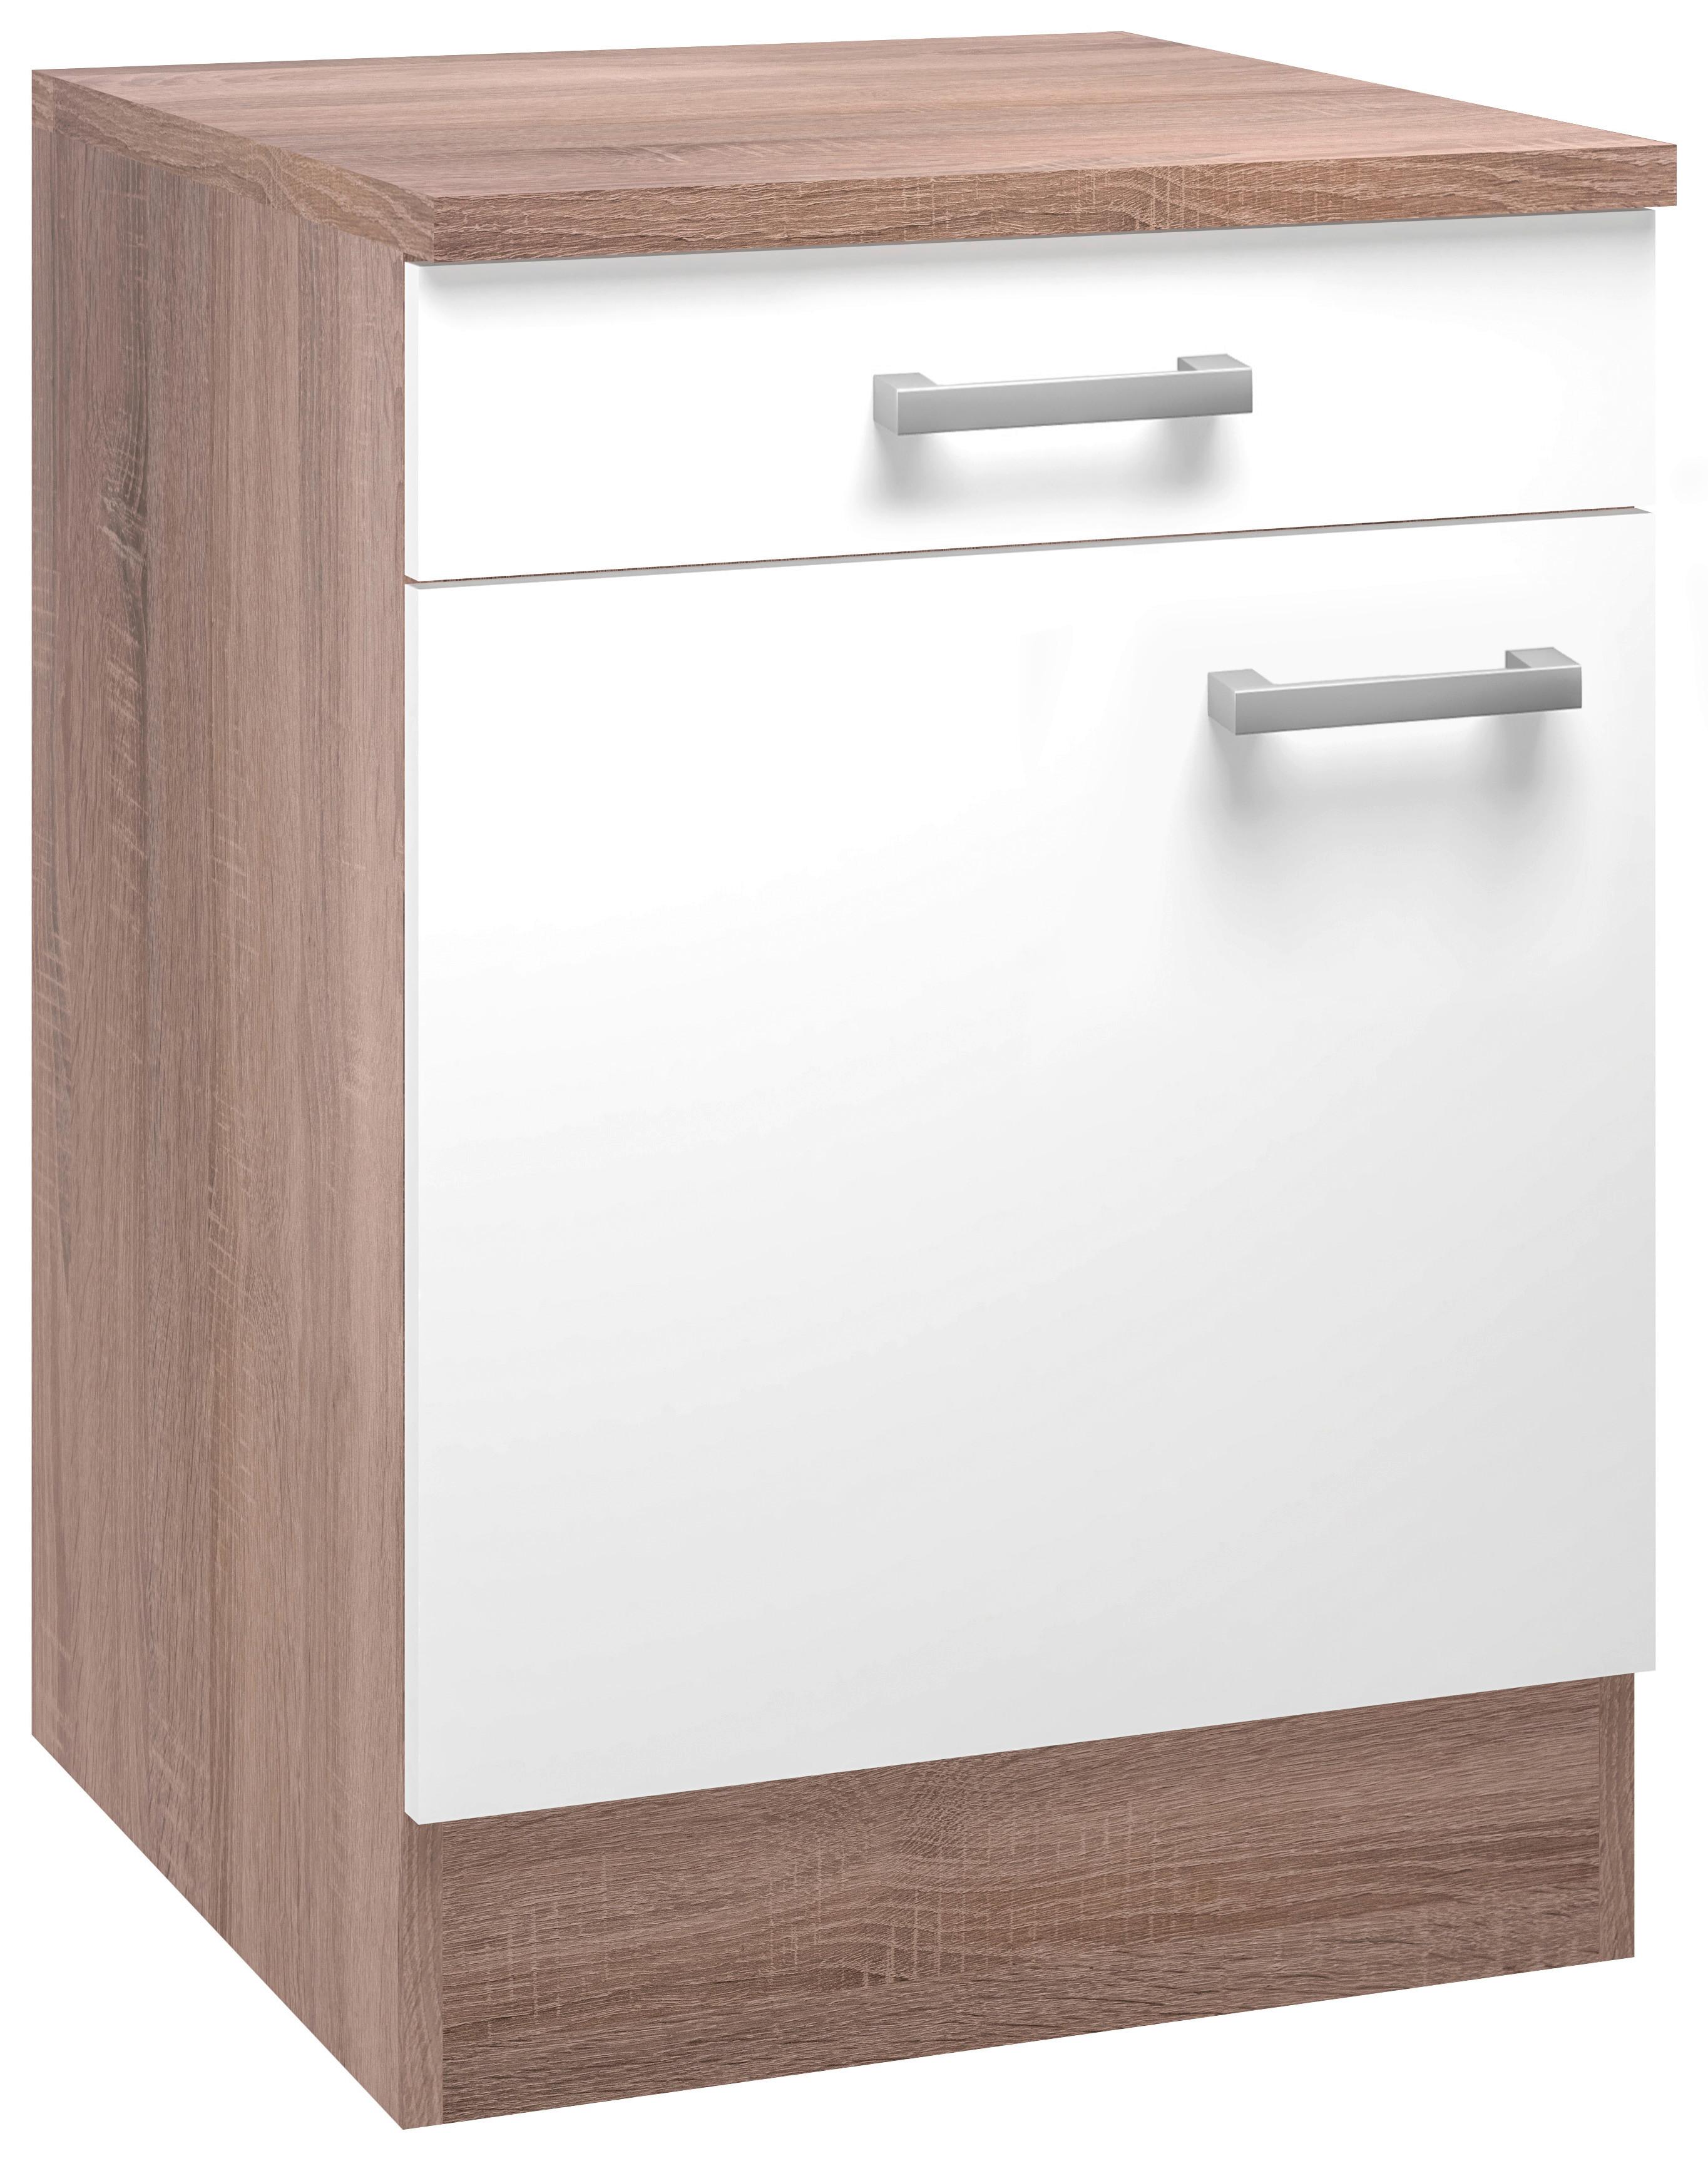 Küchenunterschrank Lexa Weiss/Eiche - Alufarben/Weiß, MODERN, Holzwerkstoff/Kunststoff (60/85/60cm) - Based